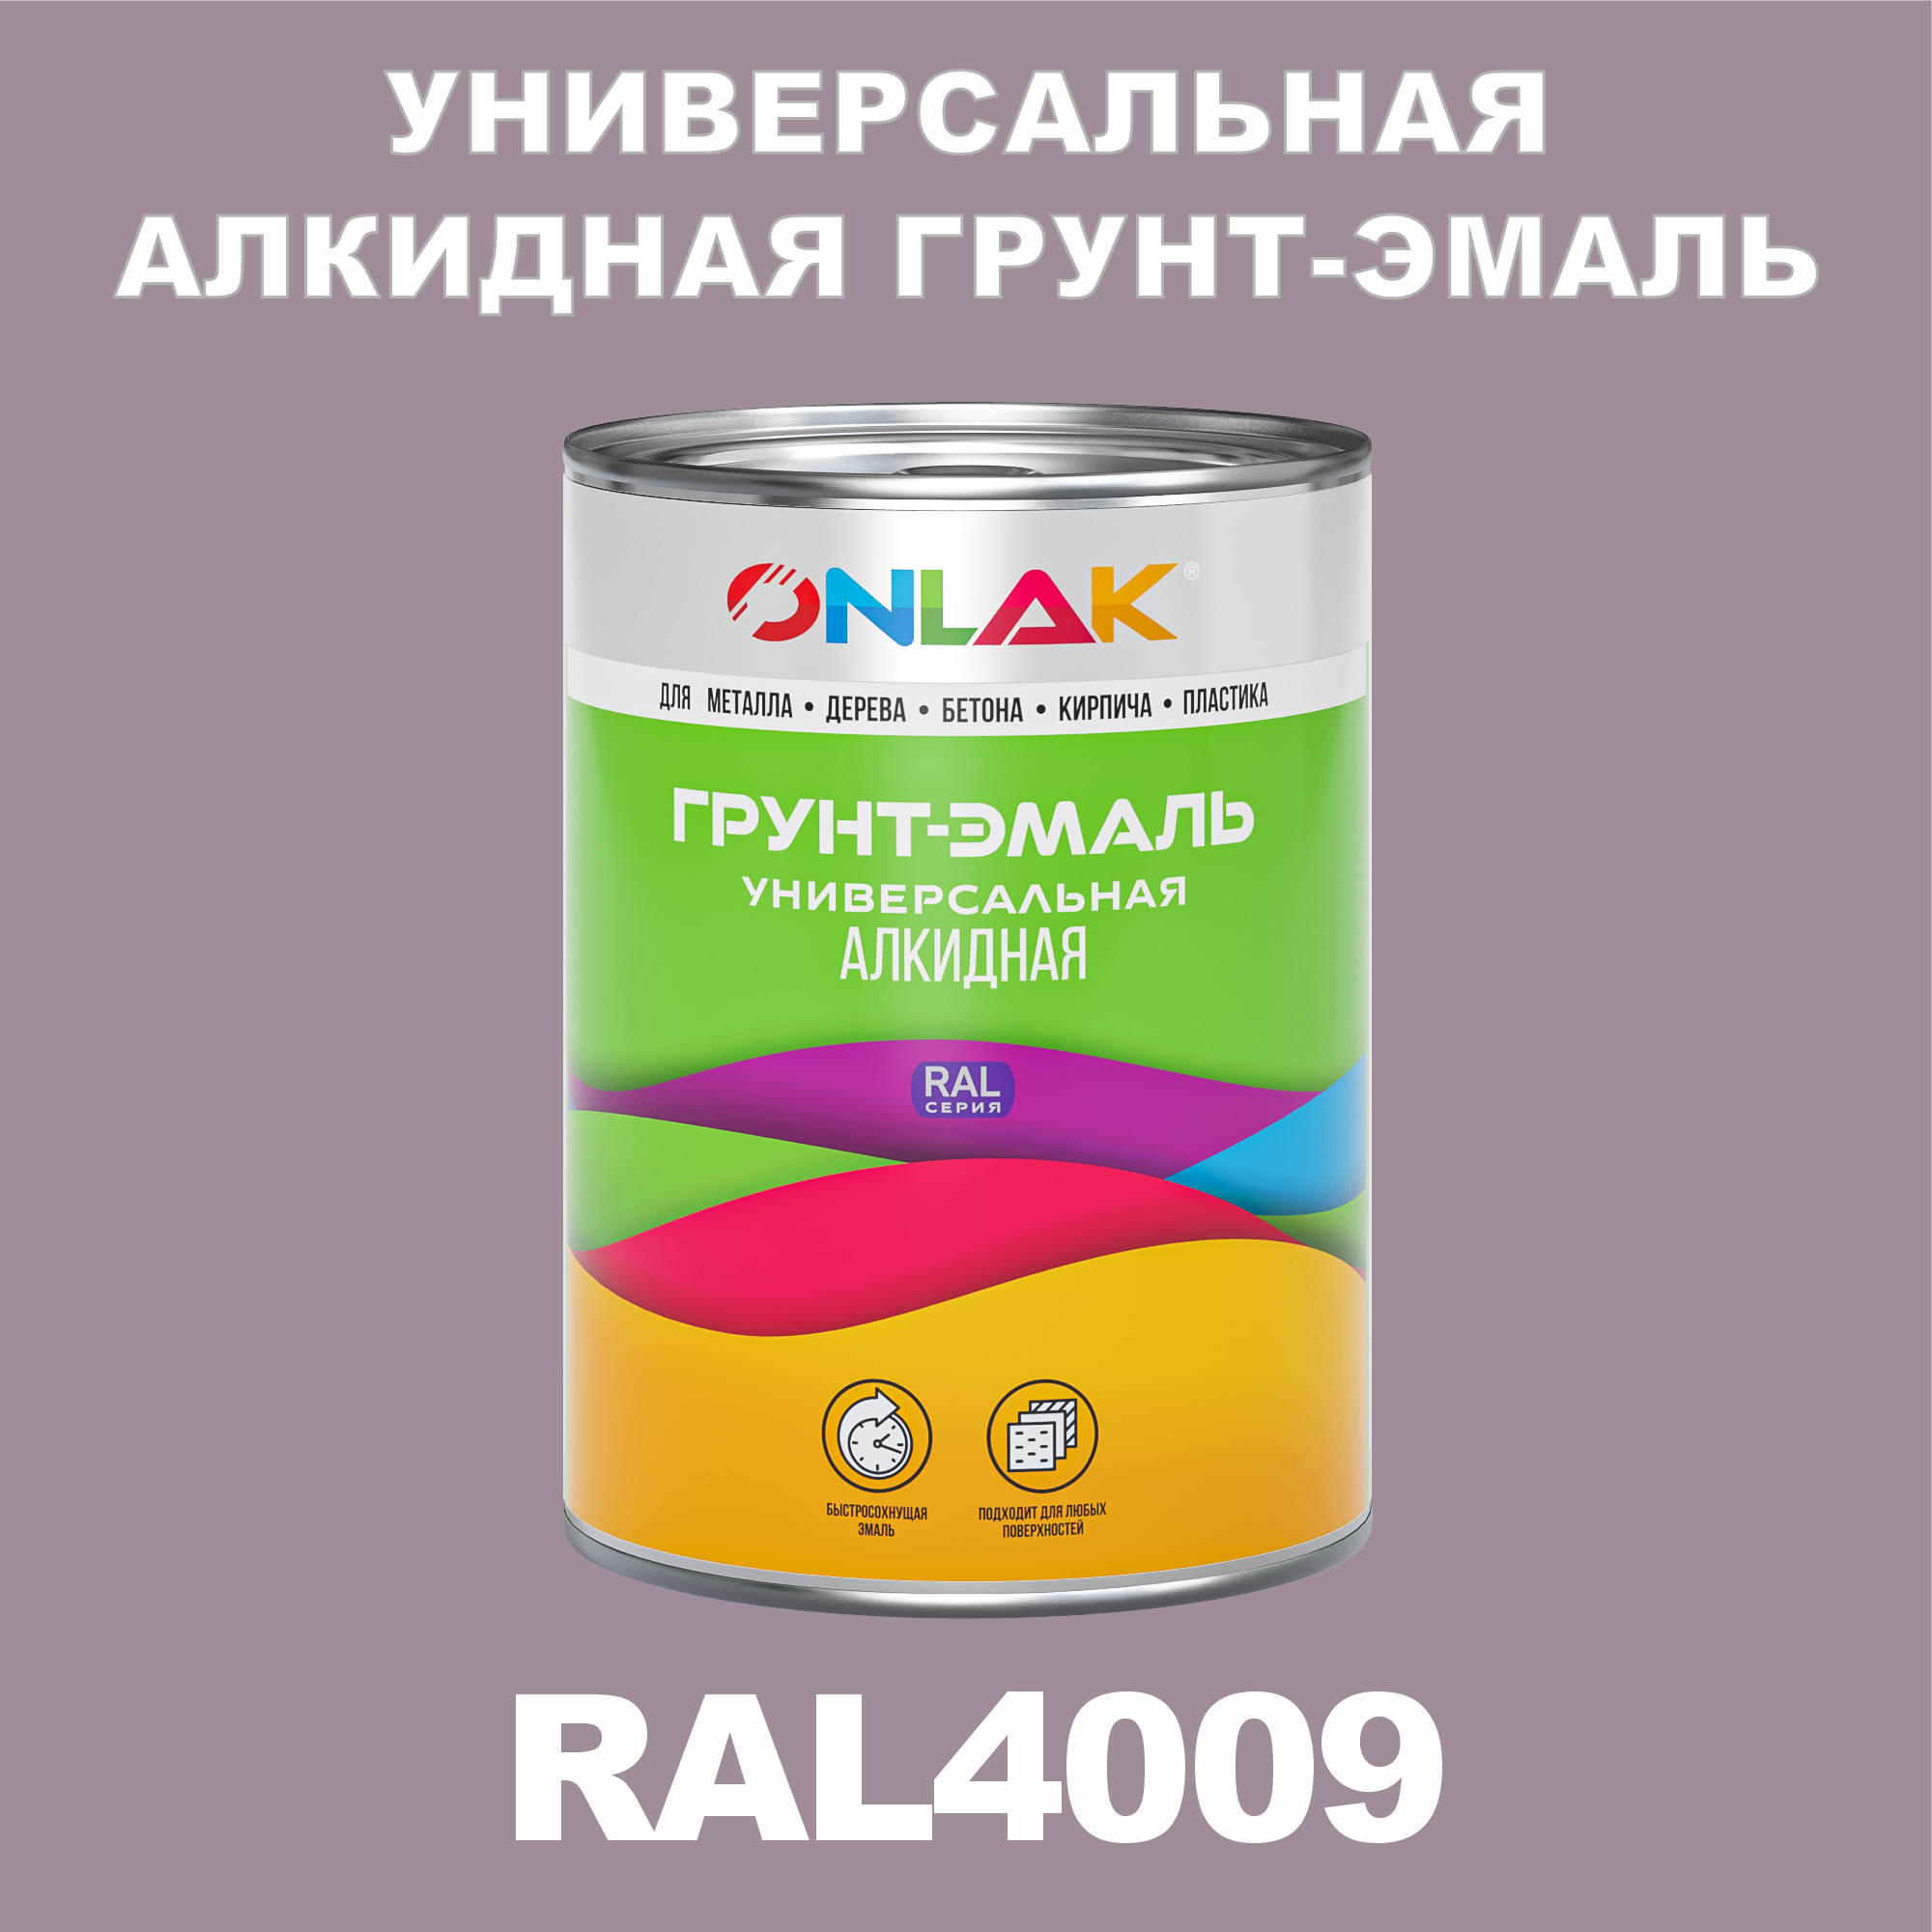 Грунт-эмаль ONLAK 1К RAL4009 антикоррозионная алкидная по металлу по ржавчине 1 кг грунт эмаль аэрозольная престиж 3в1 алкидная коричневая ral 8017 425 мл 0 425 кг